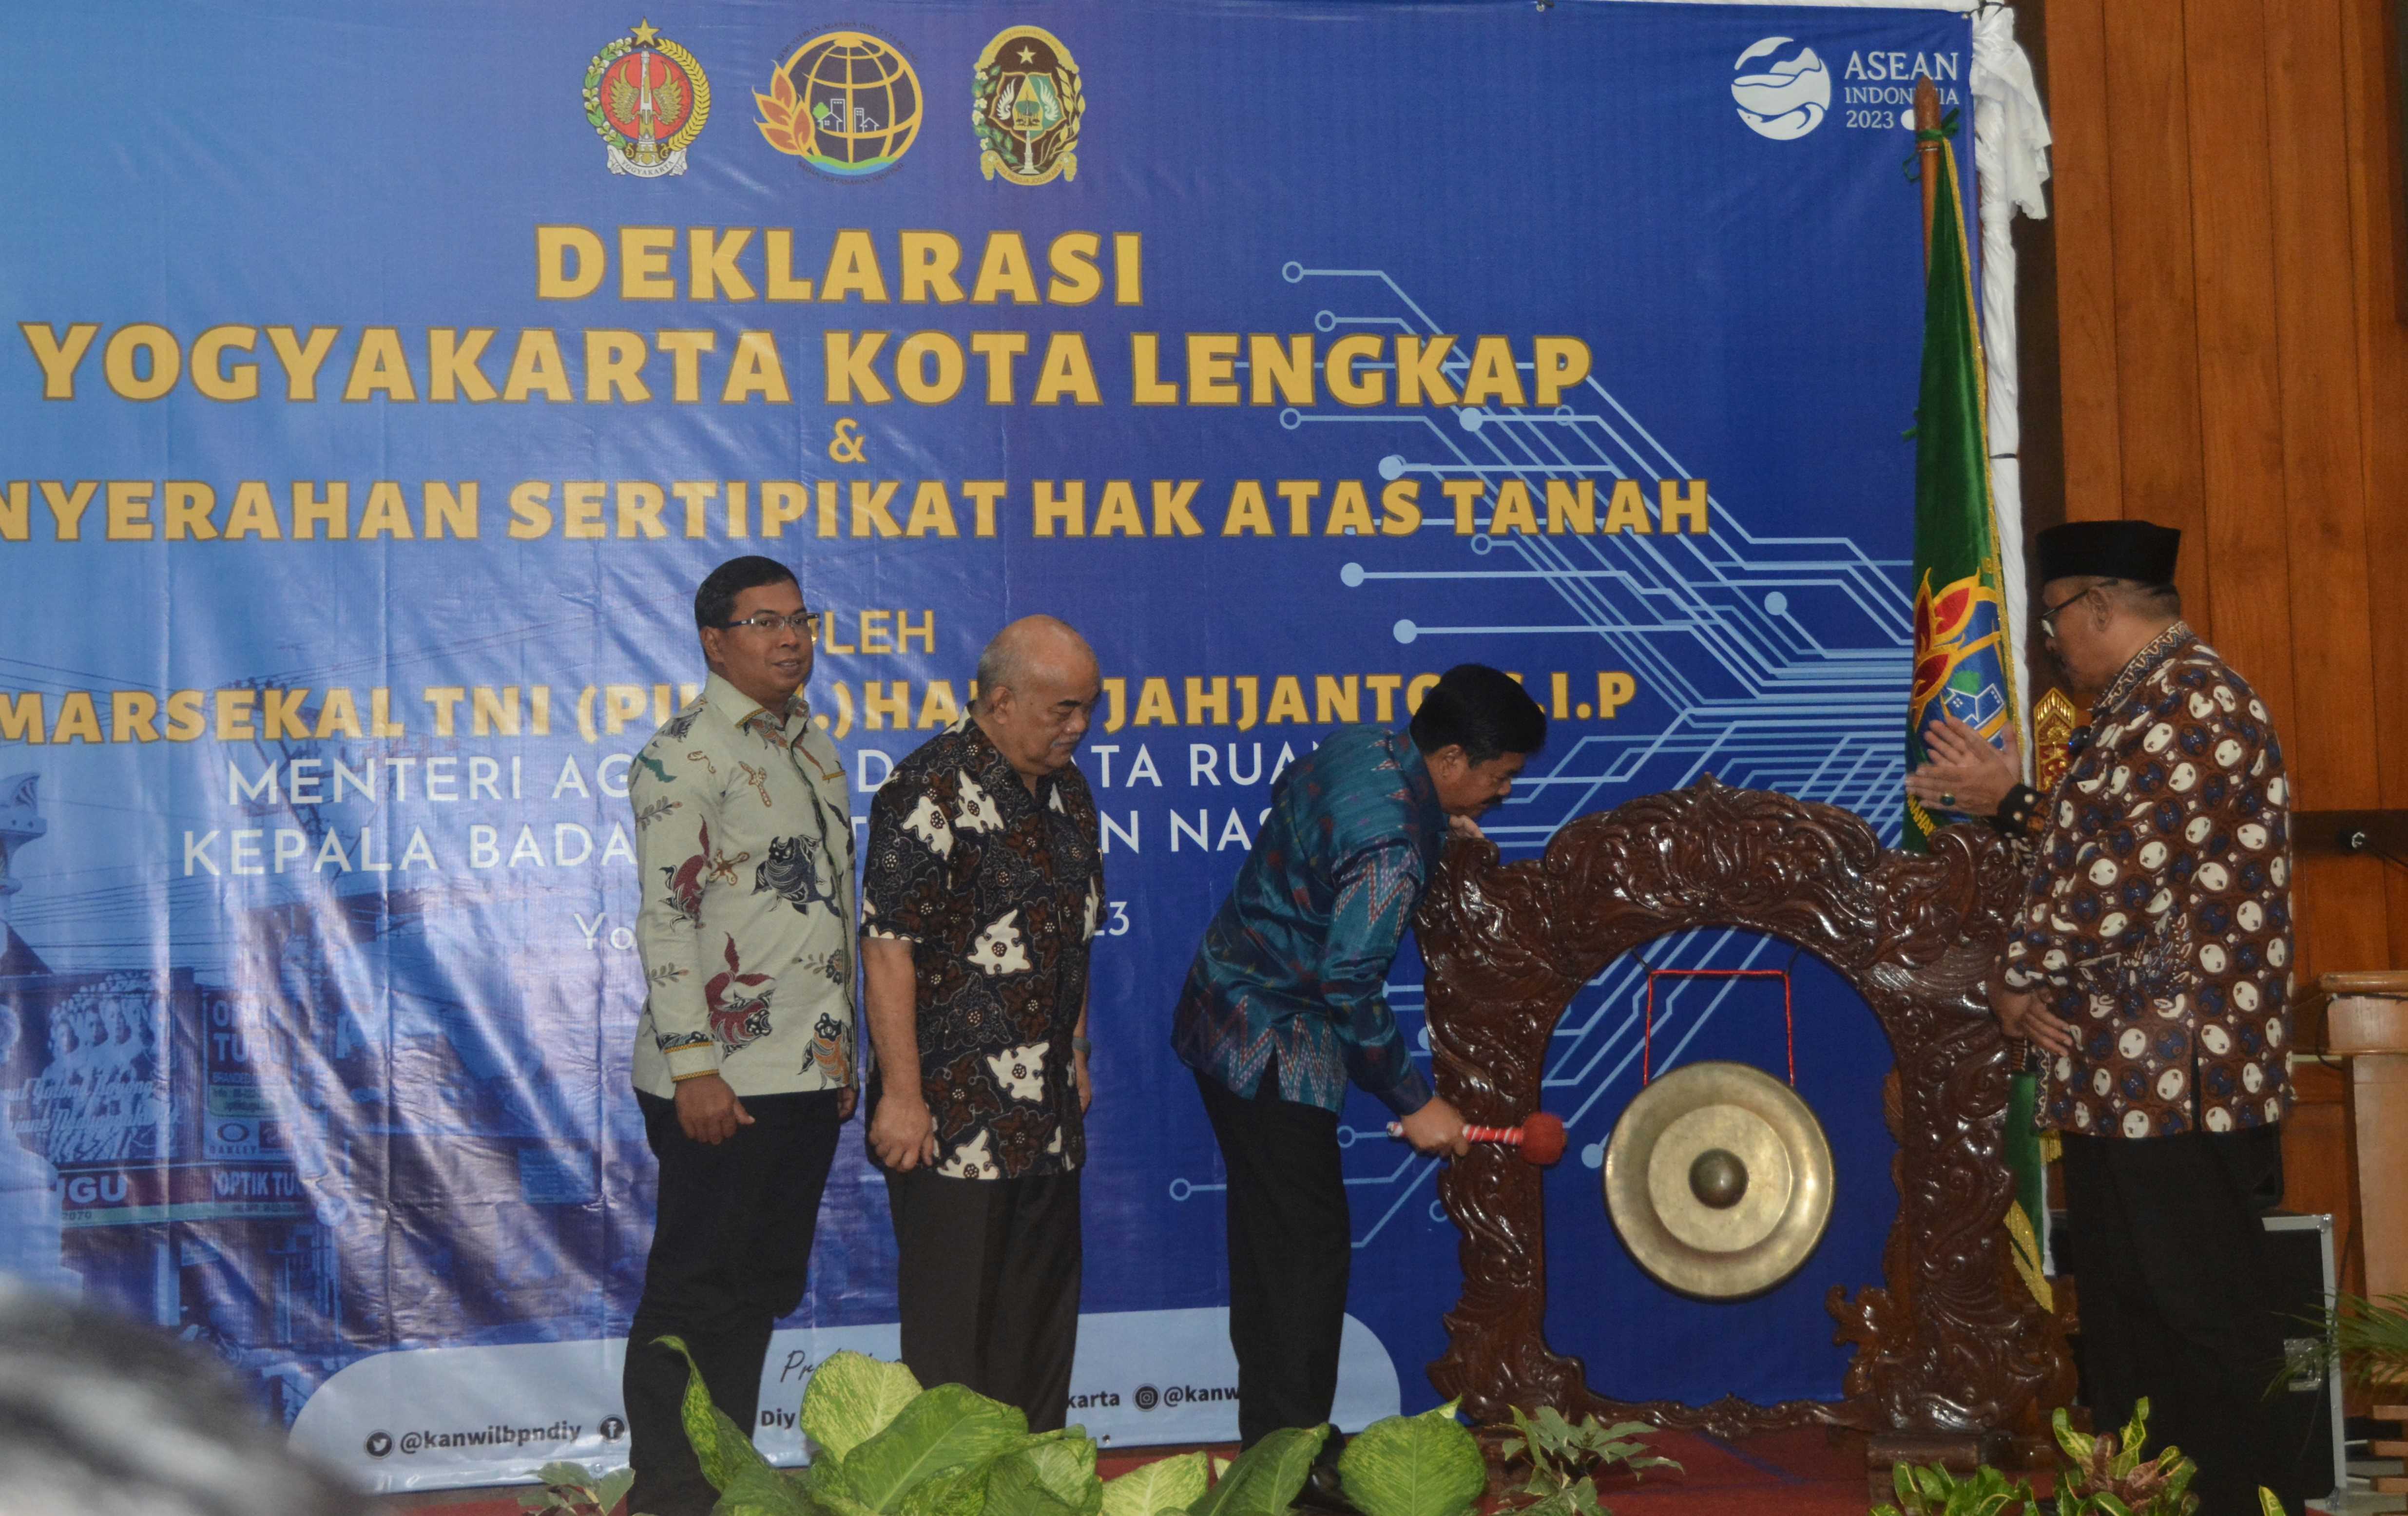 Menteri ATR Deklarasikan Yogyakarta Sebagai Kota Lengkap   